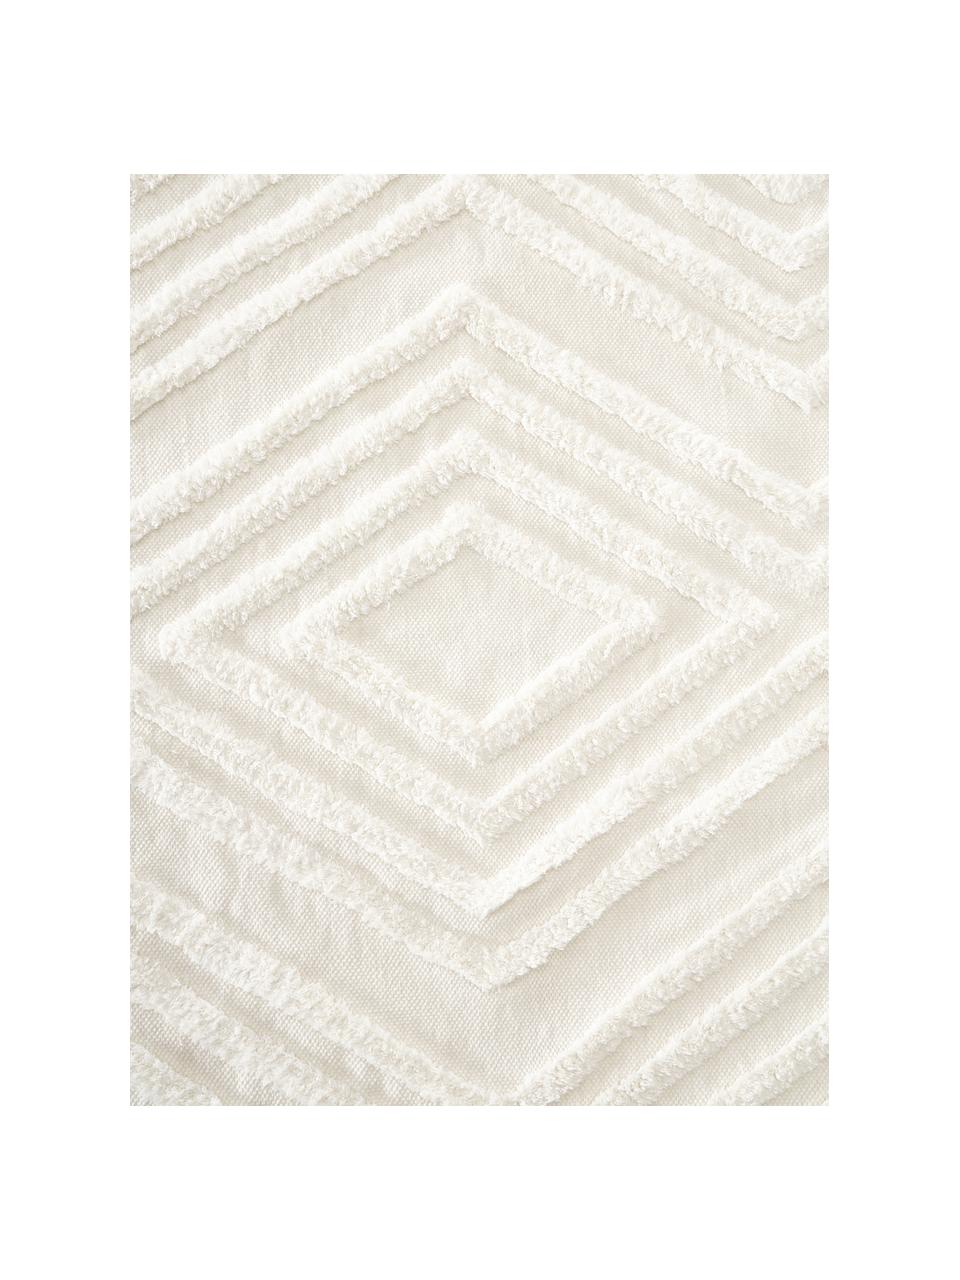 Runder Baumwollteppich Ziggy mit erhabener Hoch-Tief-Struktur, 100% Baumwolle, Cremeweiss, Ø 120 cm (Grösse S)